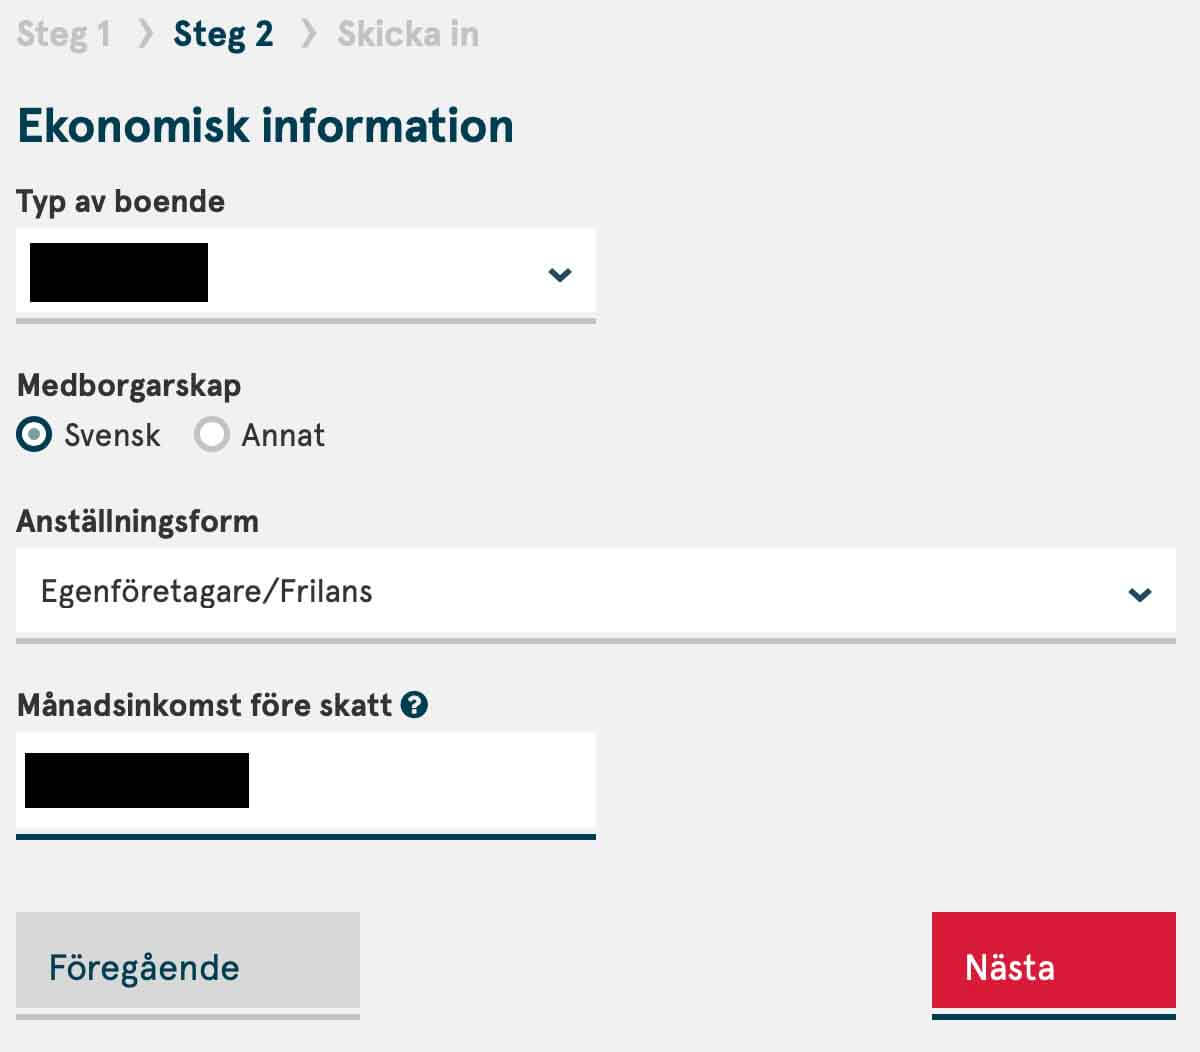 Steg 2 i ansökan om Norwegian kreditkort - ekonomisk information